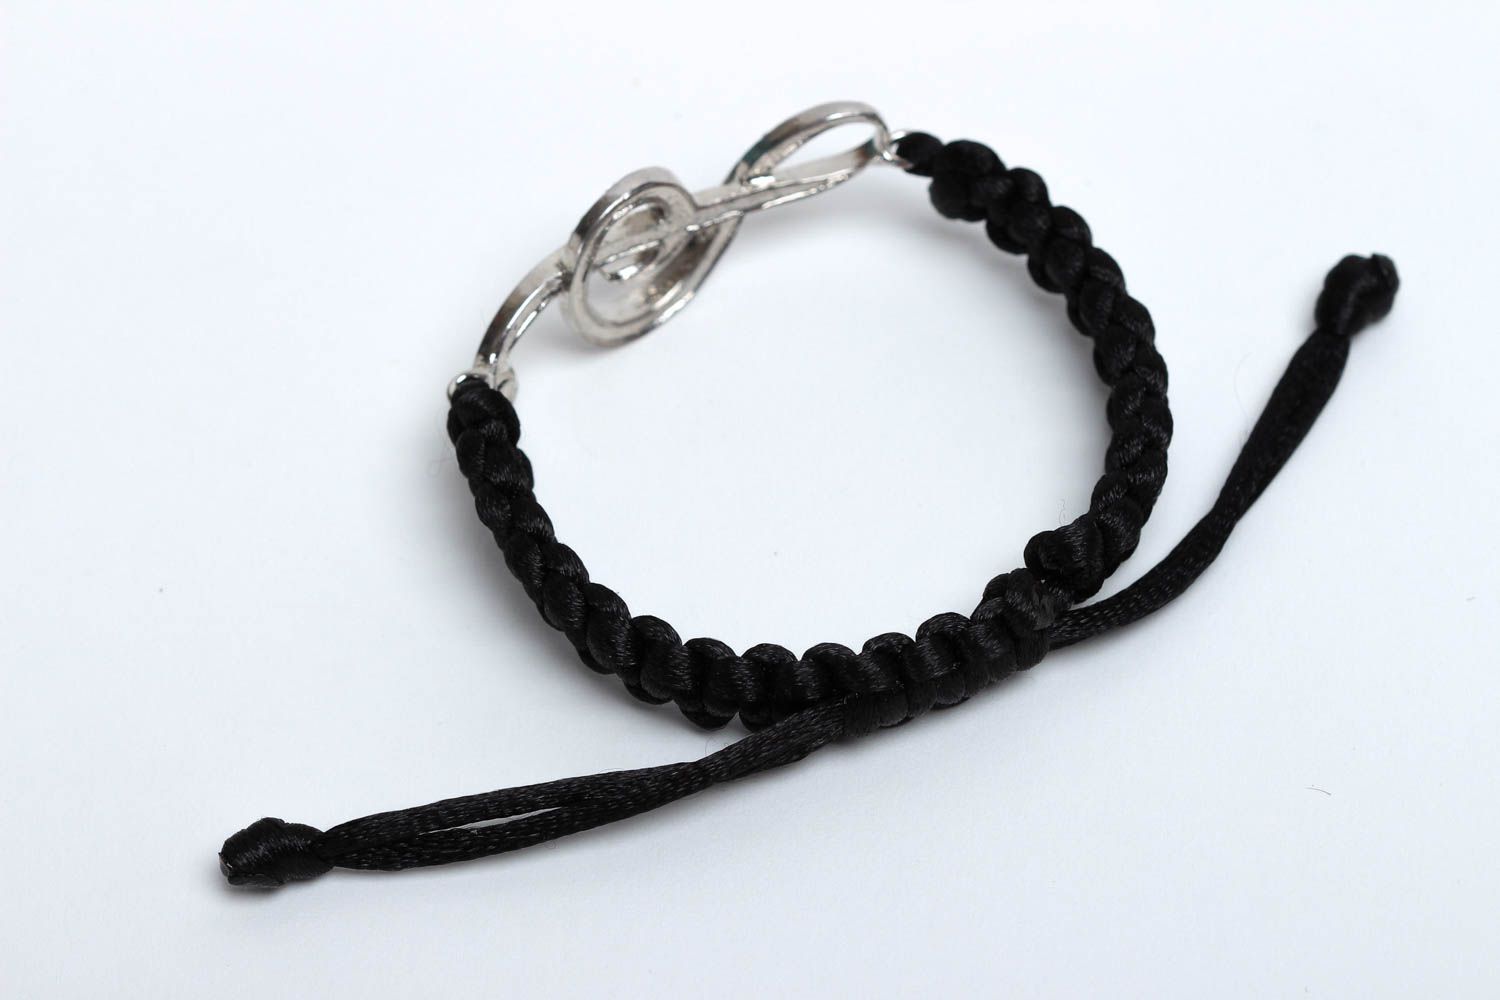 Bracelet clef de sol Bijou fait main en cordons de satin noirs Cadeau femme photo 2